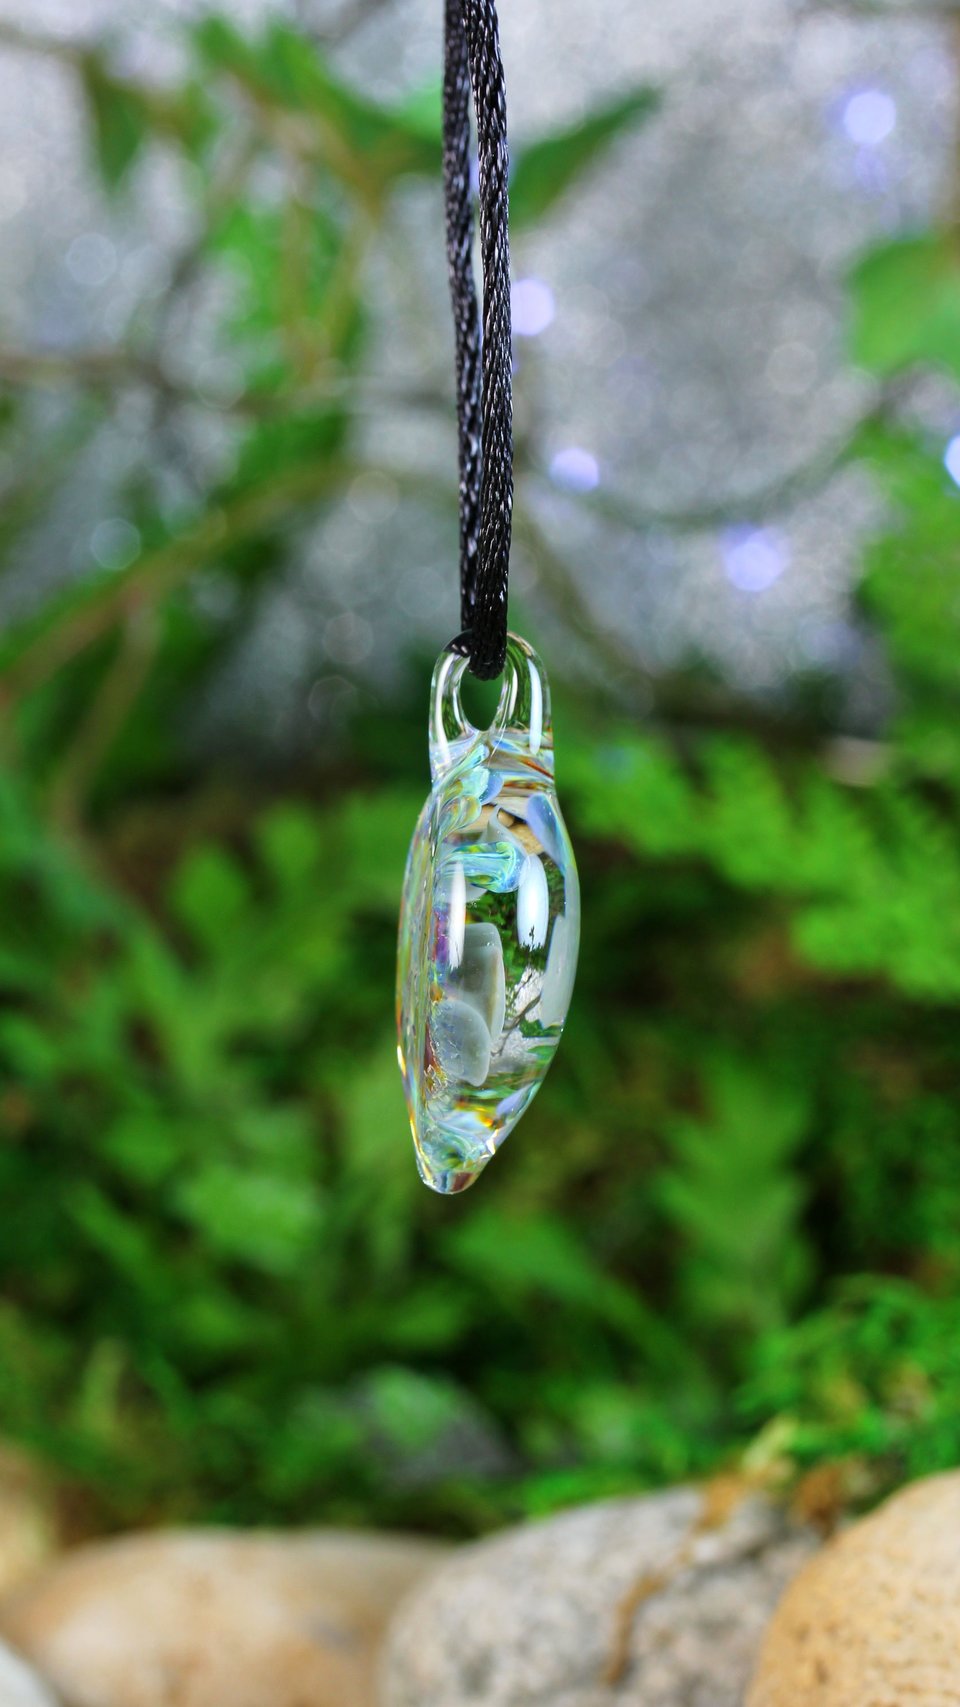 Flower Implosion Lampwork Pendant // Handmade Glass // Boro/Borosilicate Glass // Gray, Blue, Green, Soft 3-D // Z1152